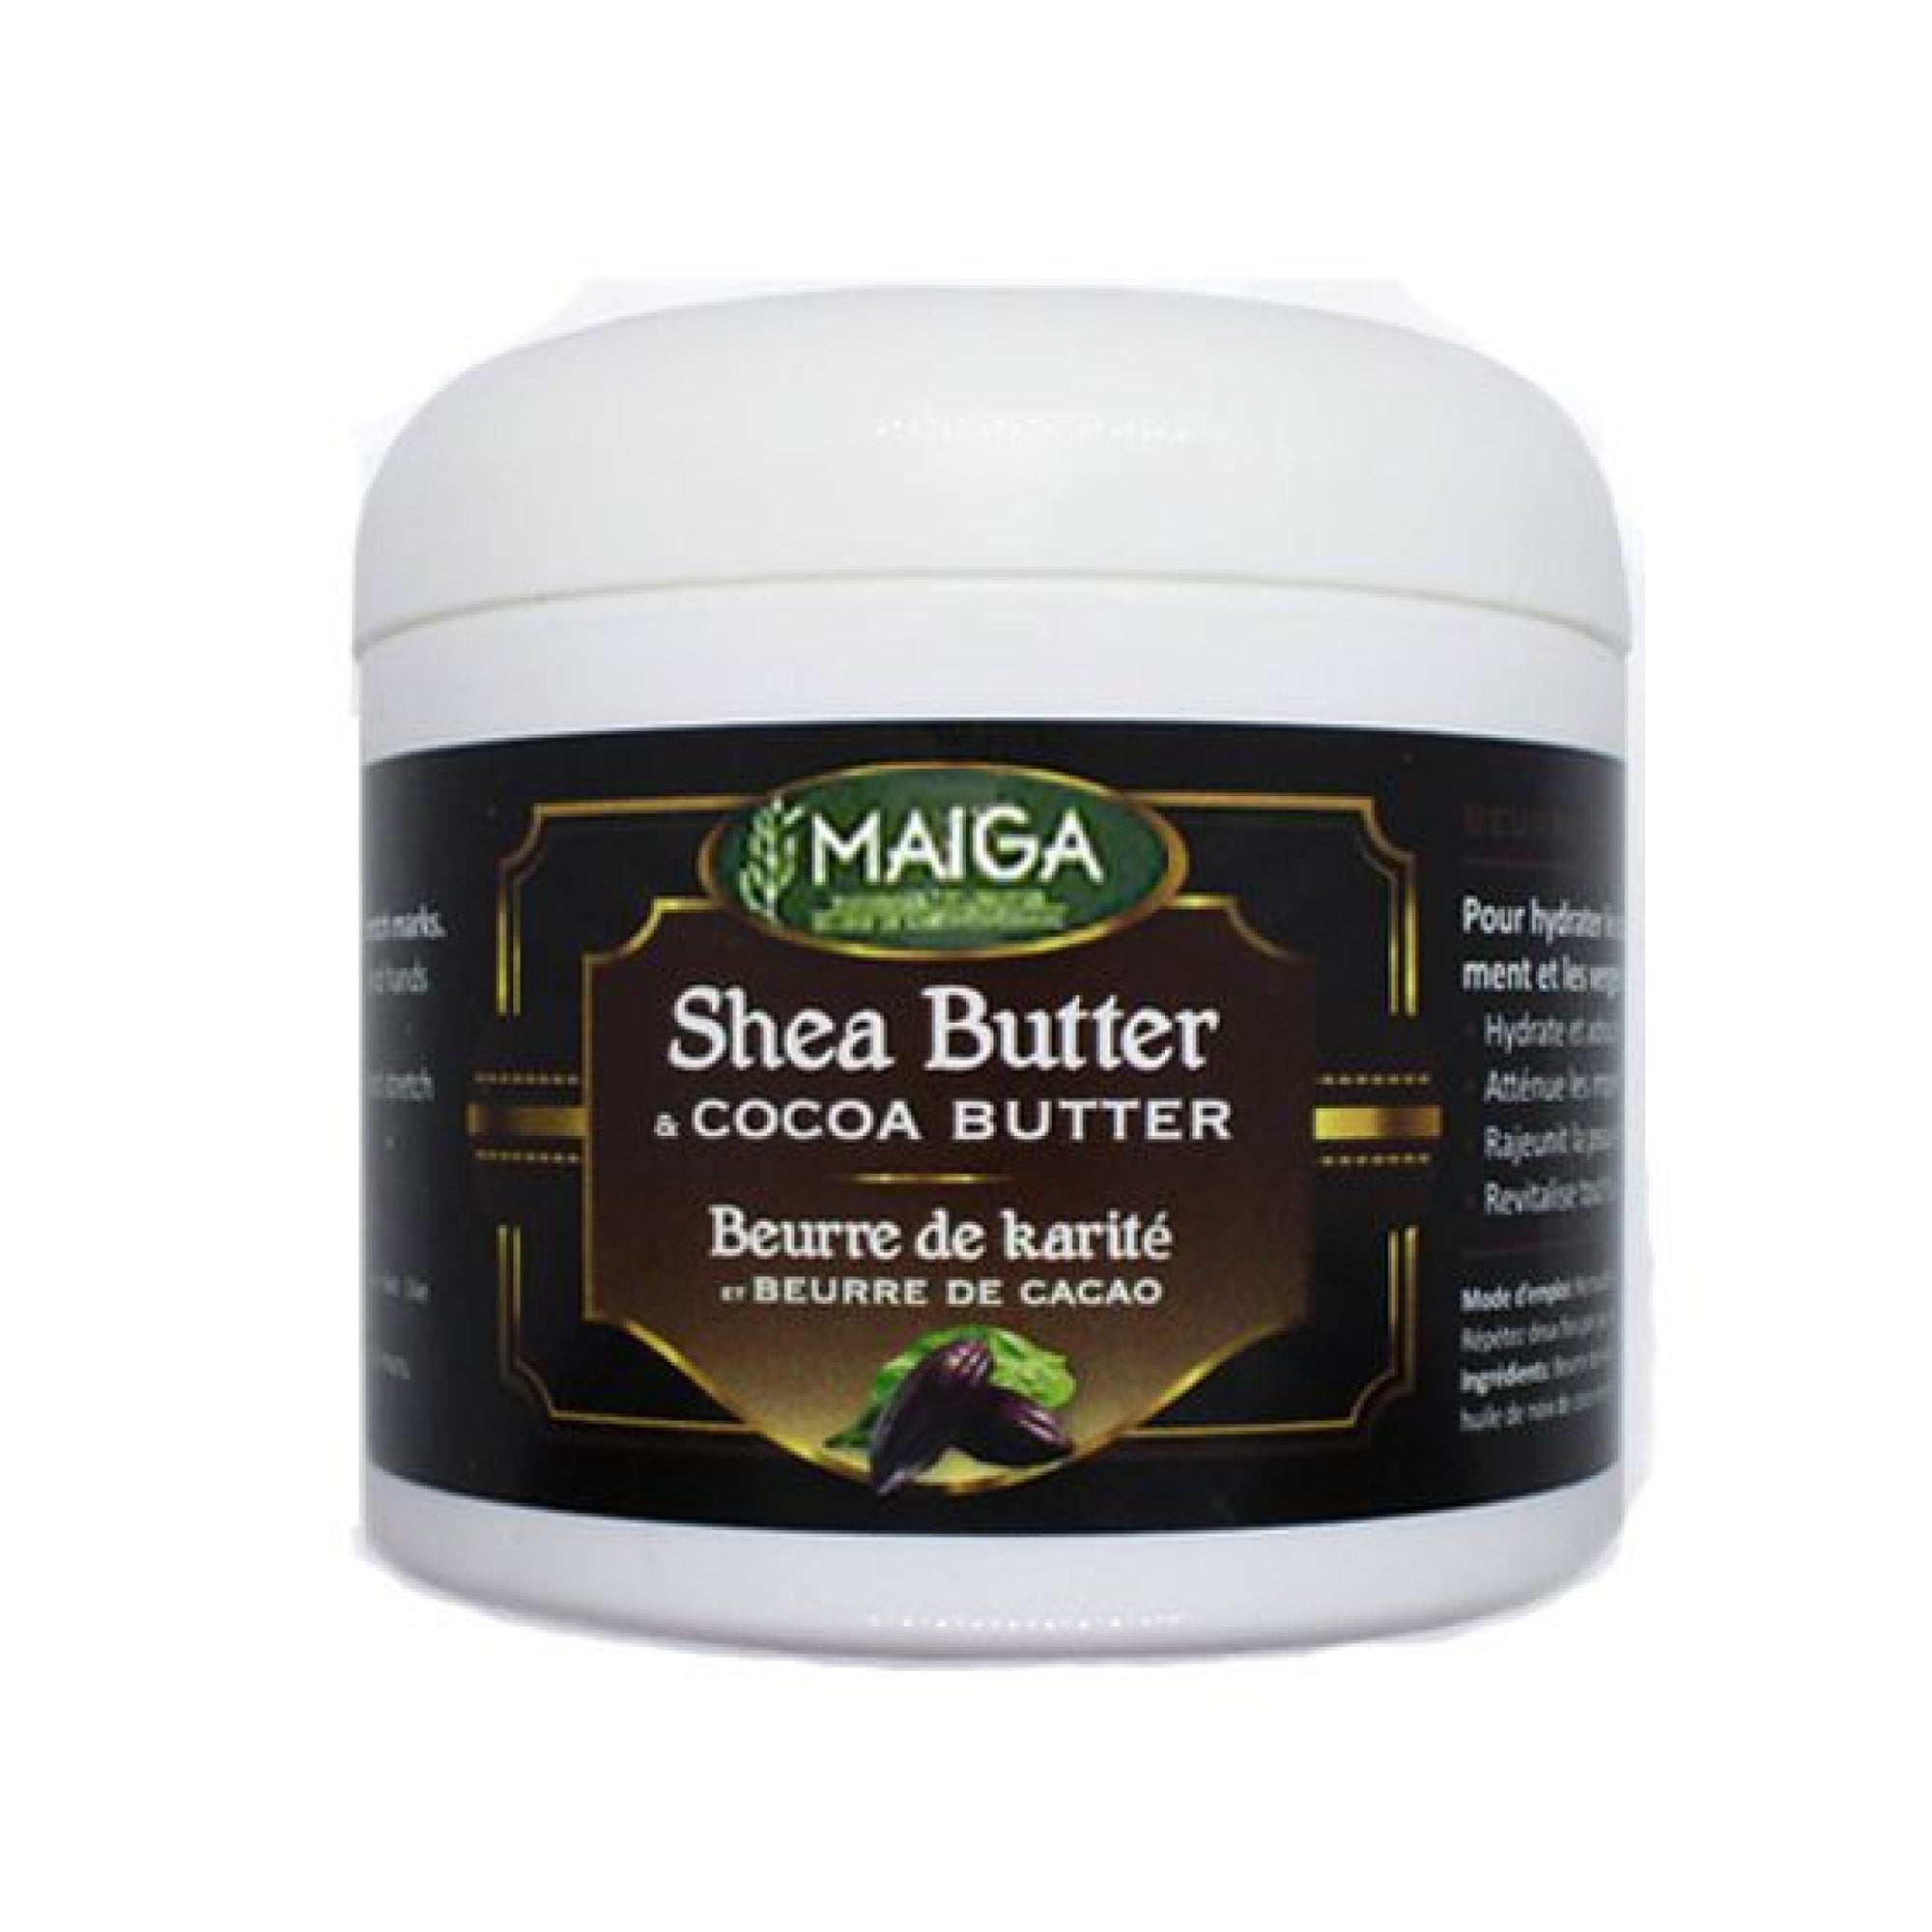 Maiga Shea Butter & Cocoa Butter 30ml